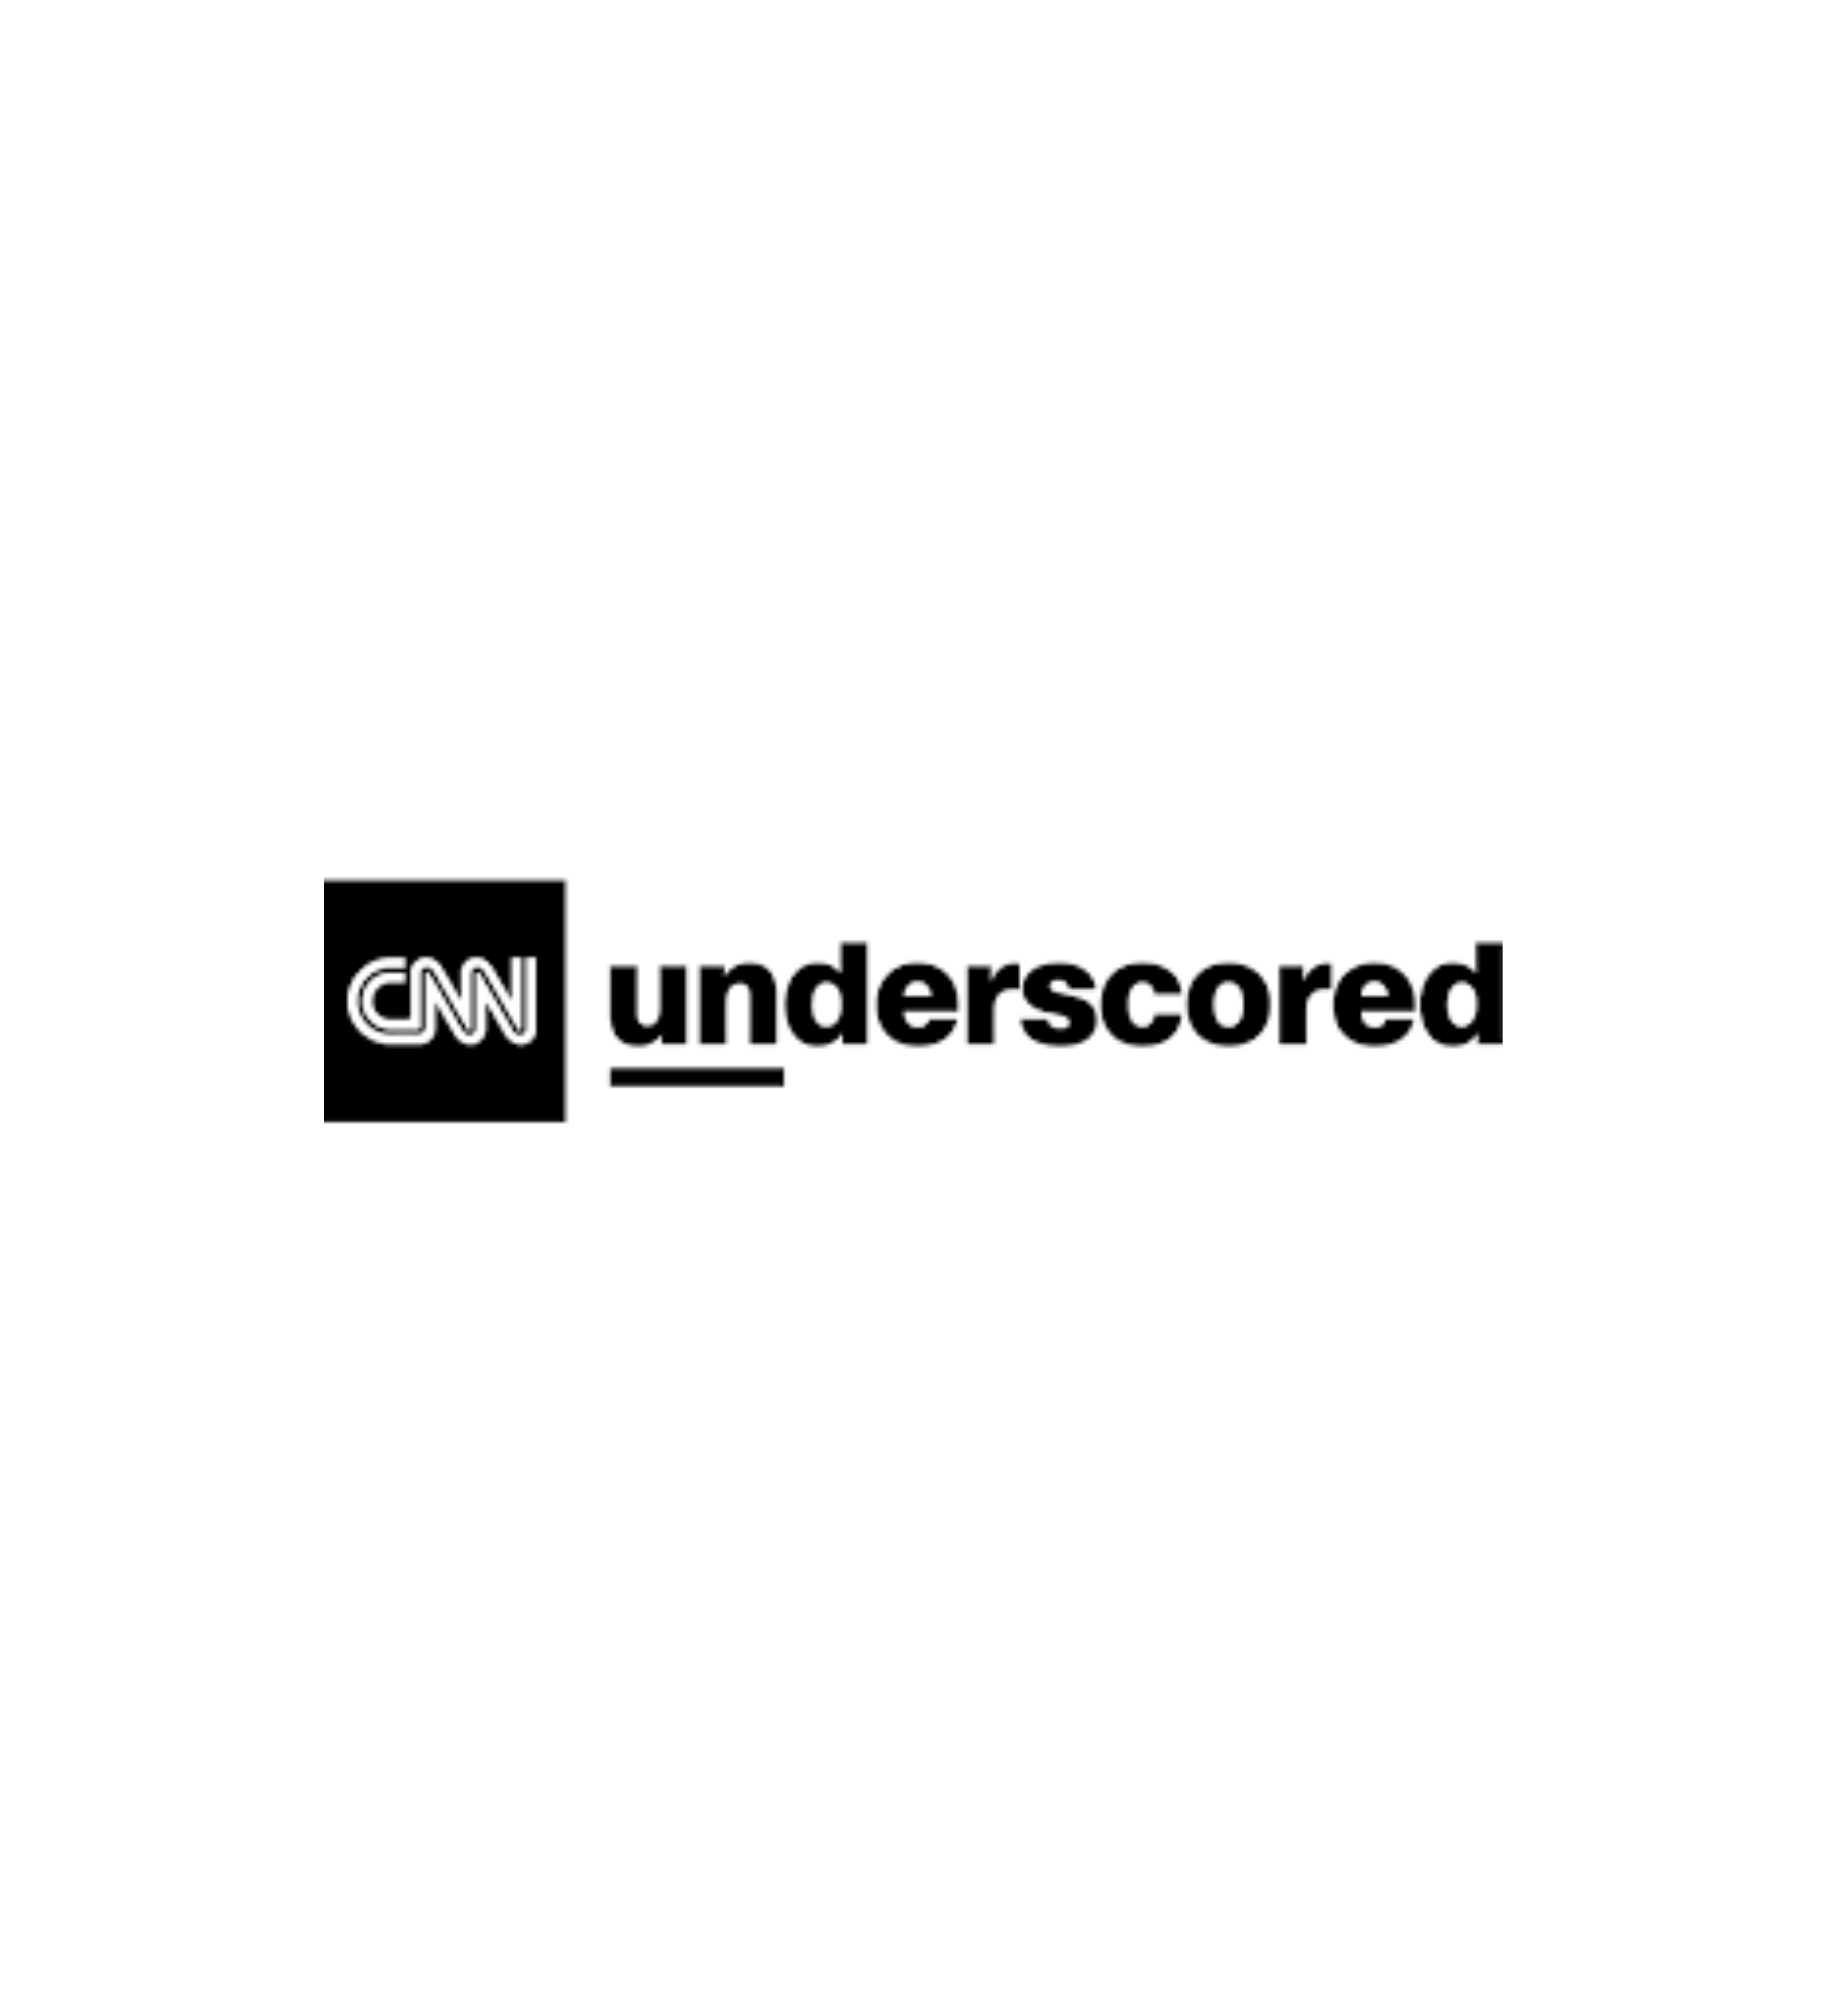 CNN_UNDERSCORED.png